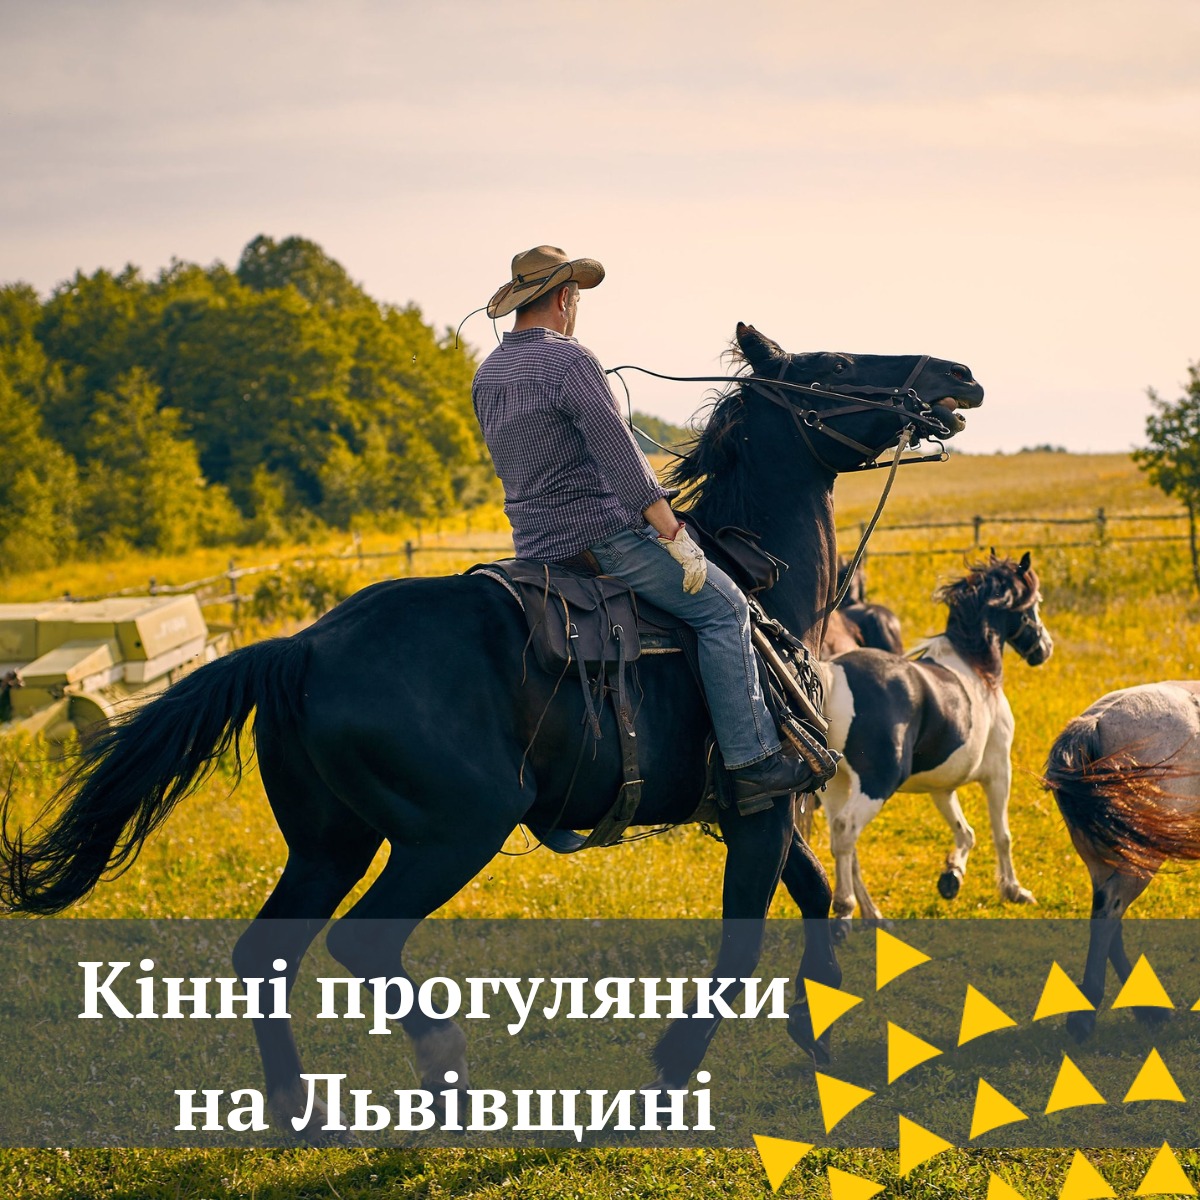 Прогулянки на конях неподалік Львова — це хороша терапія та відпочинок, адже під час їзди на конях, в роботу включаються всі м